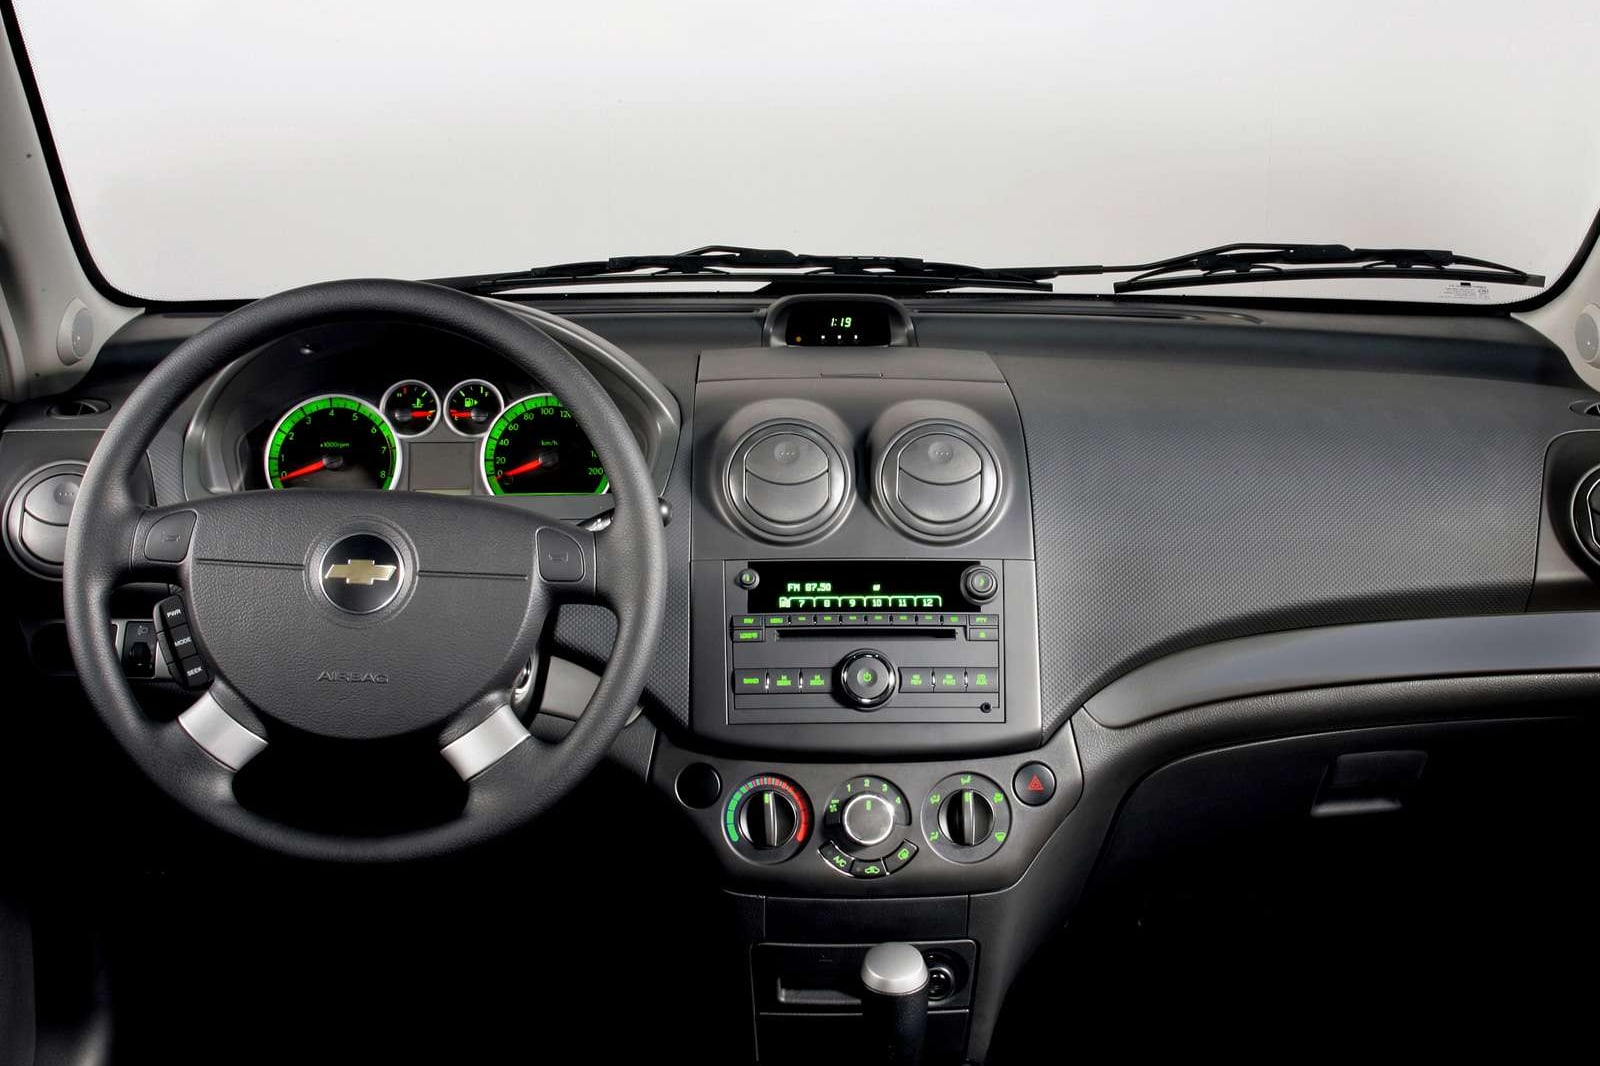 2010 Chevrolet Aveo Sedan Interior Photos | CarBuzz